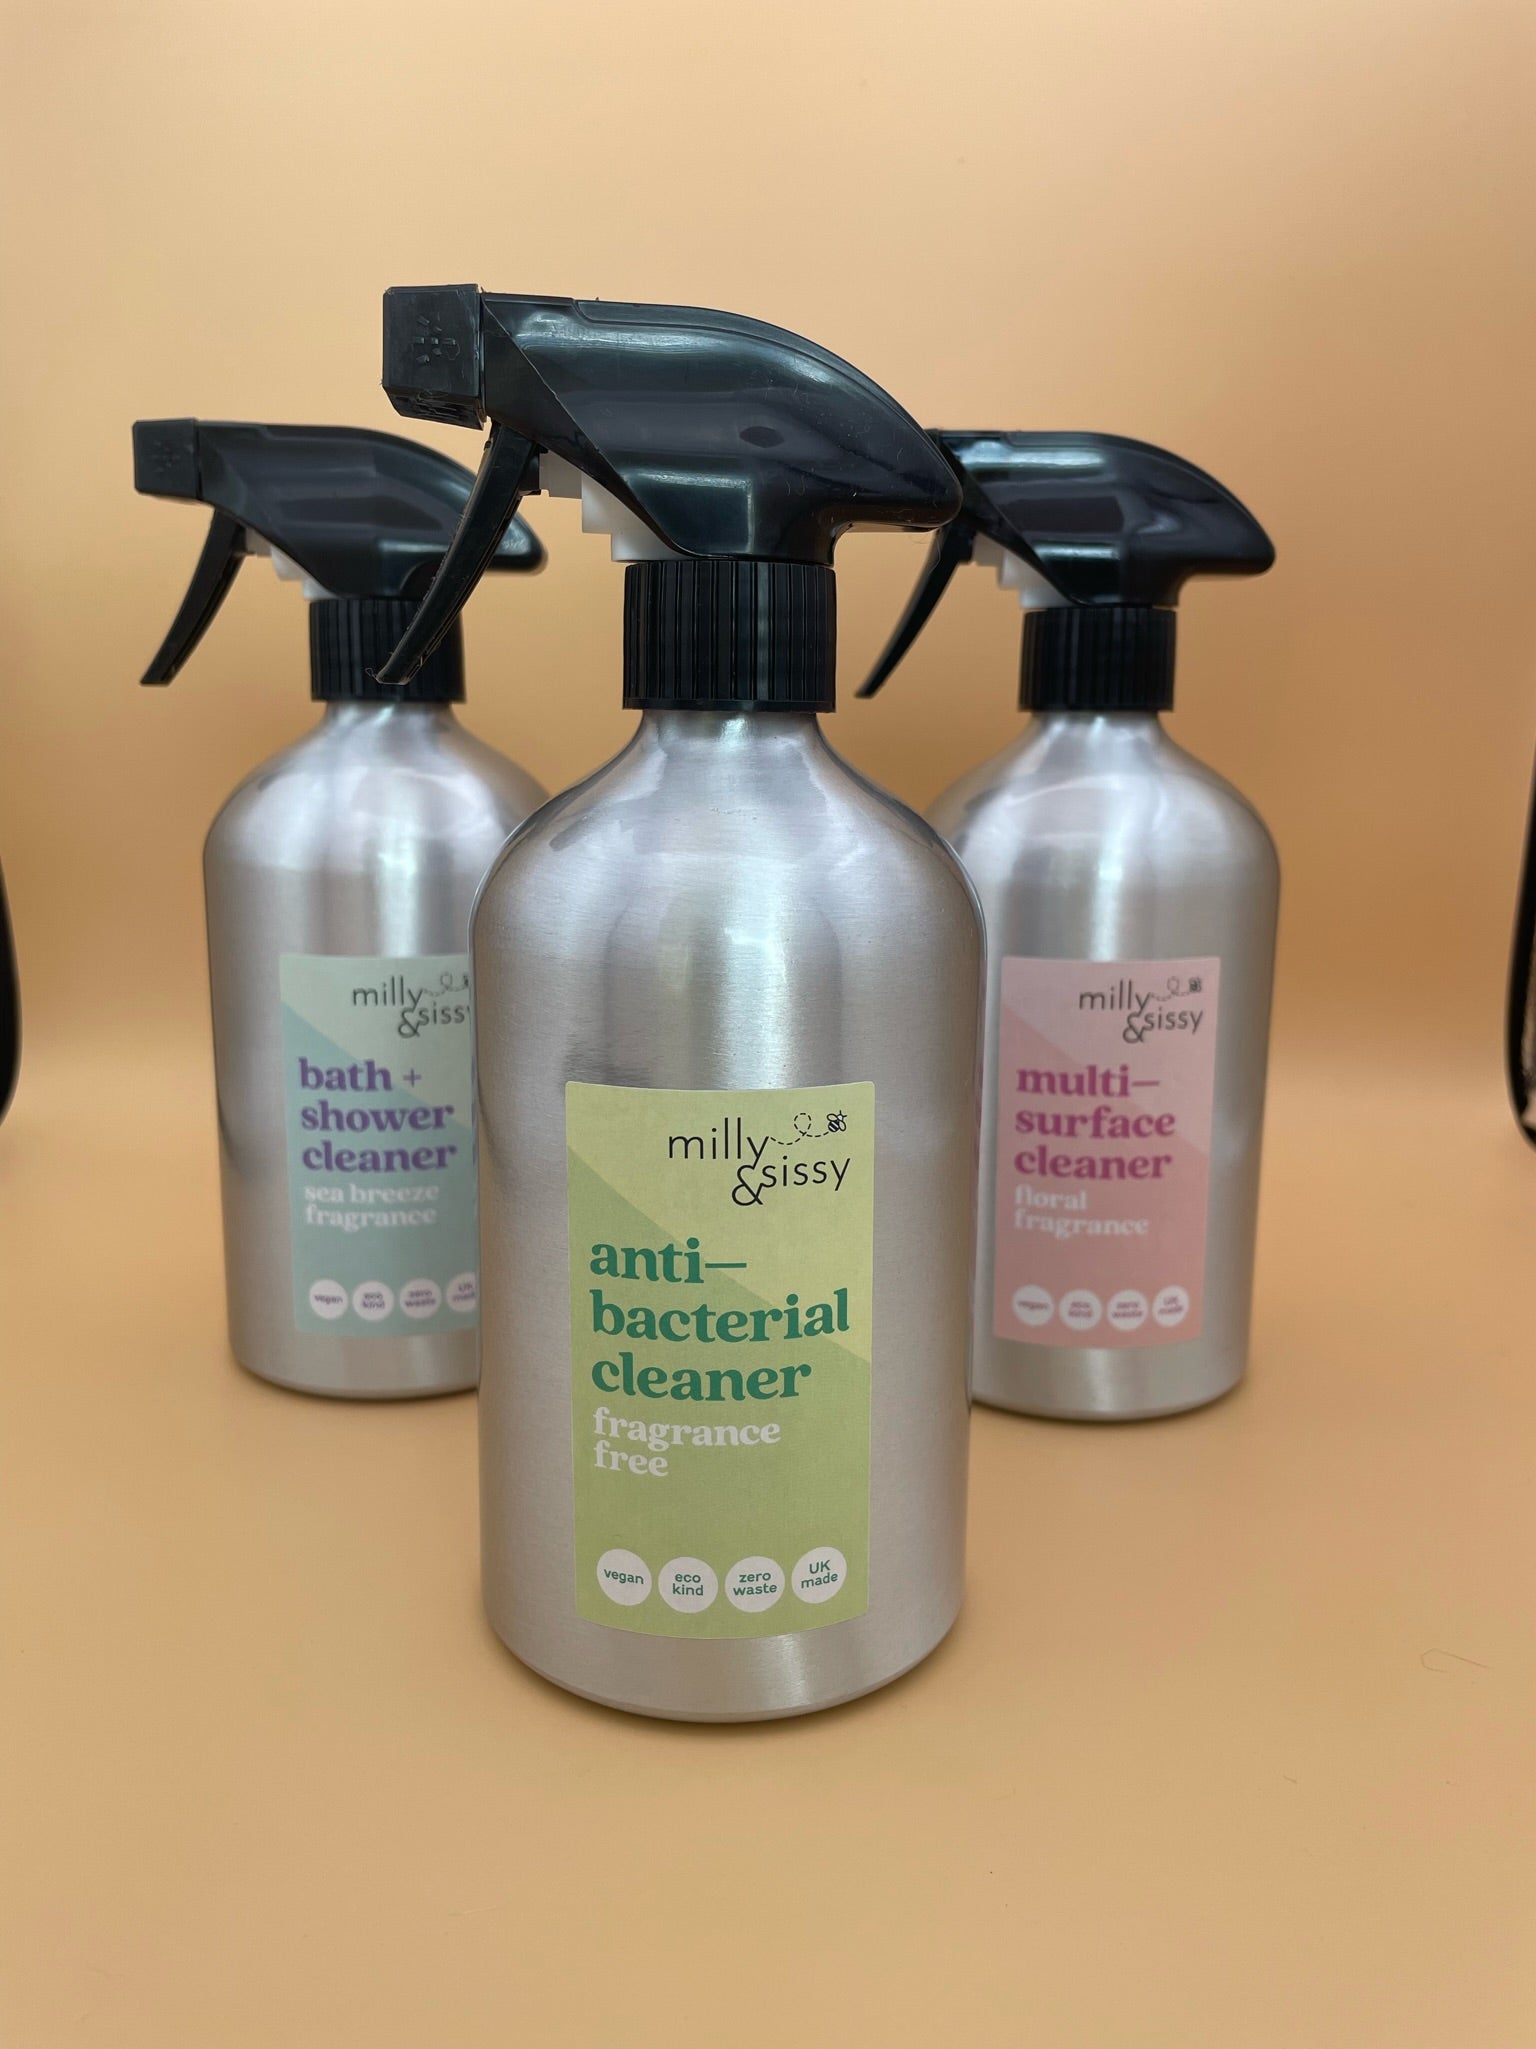 Anti Bacterial cleaner starter set: spray bottle + 3 refill pods